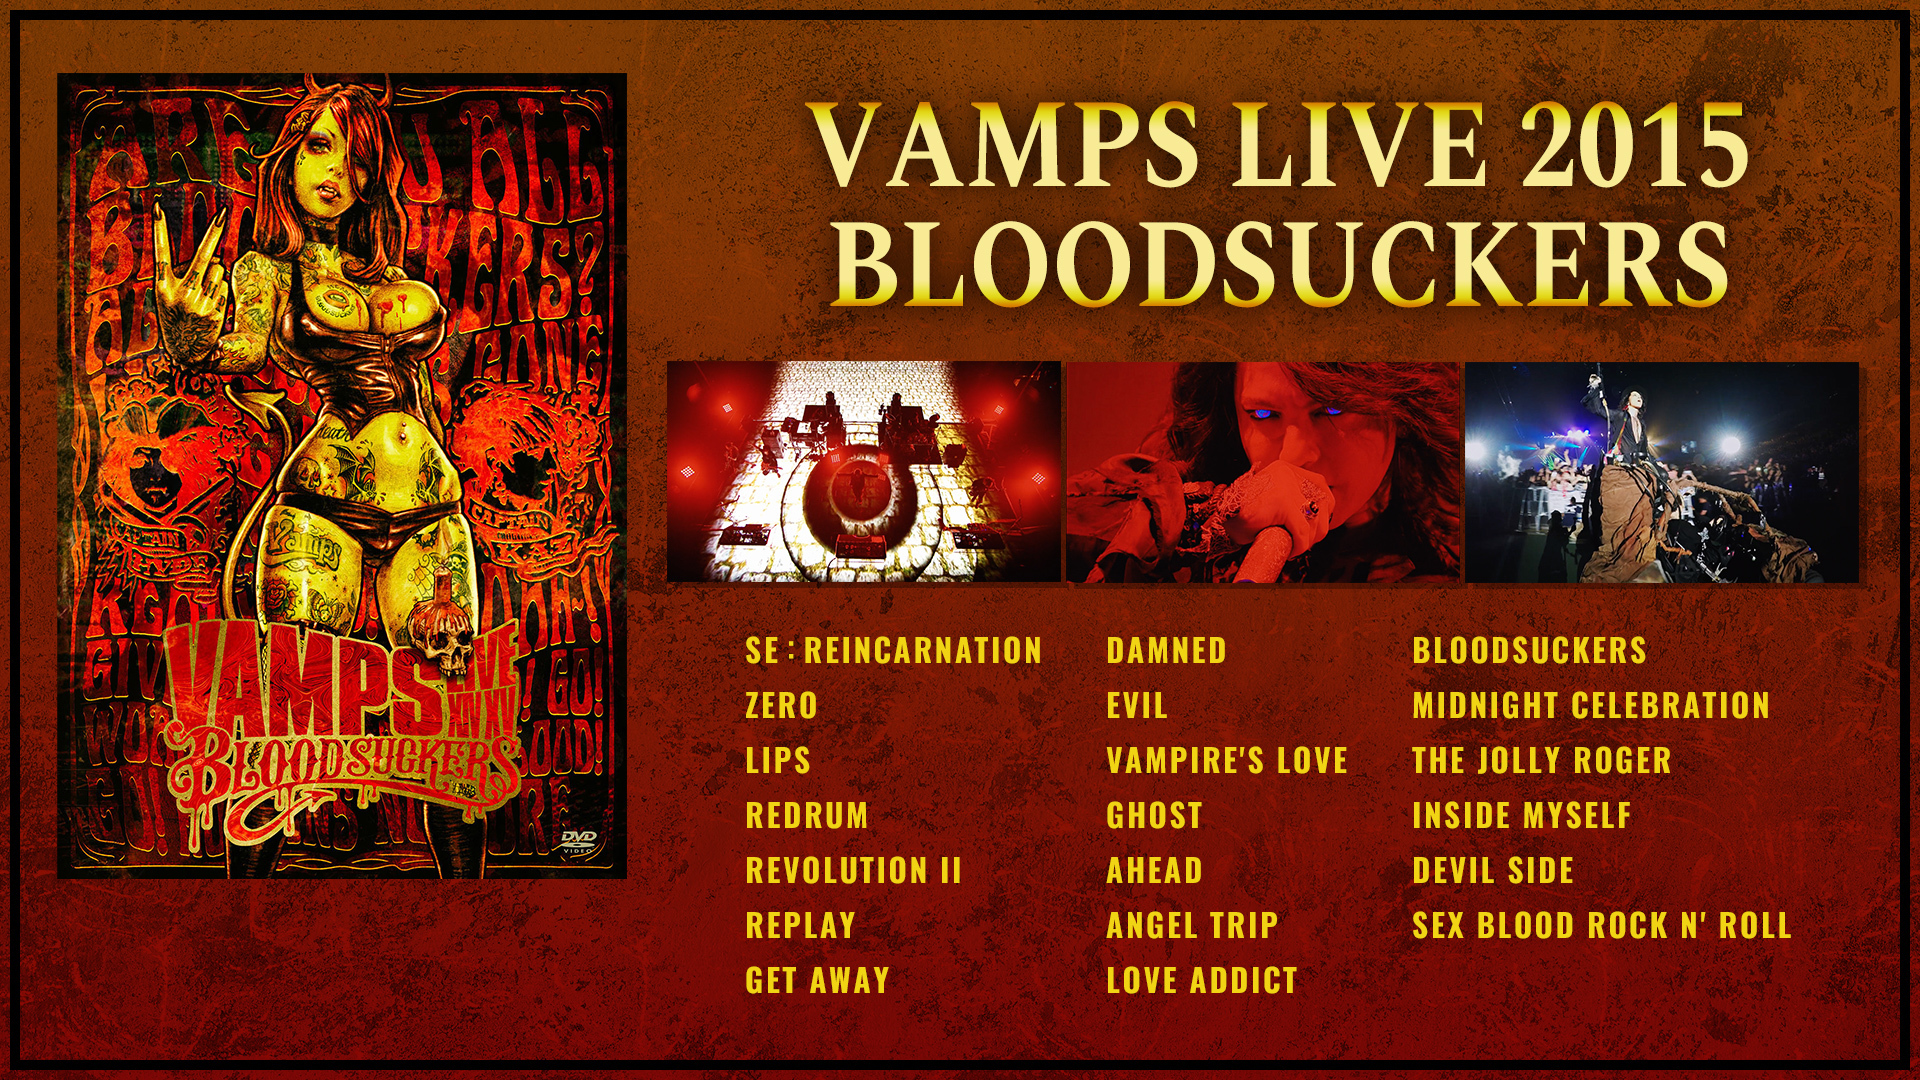 VAMPS LIVE 2015 BLOODSUCKERS